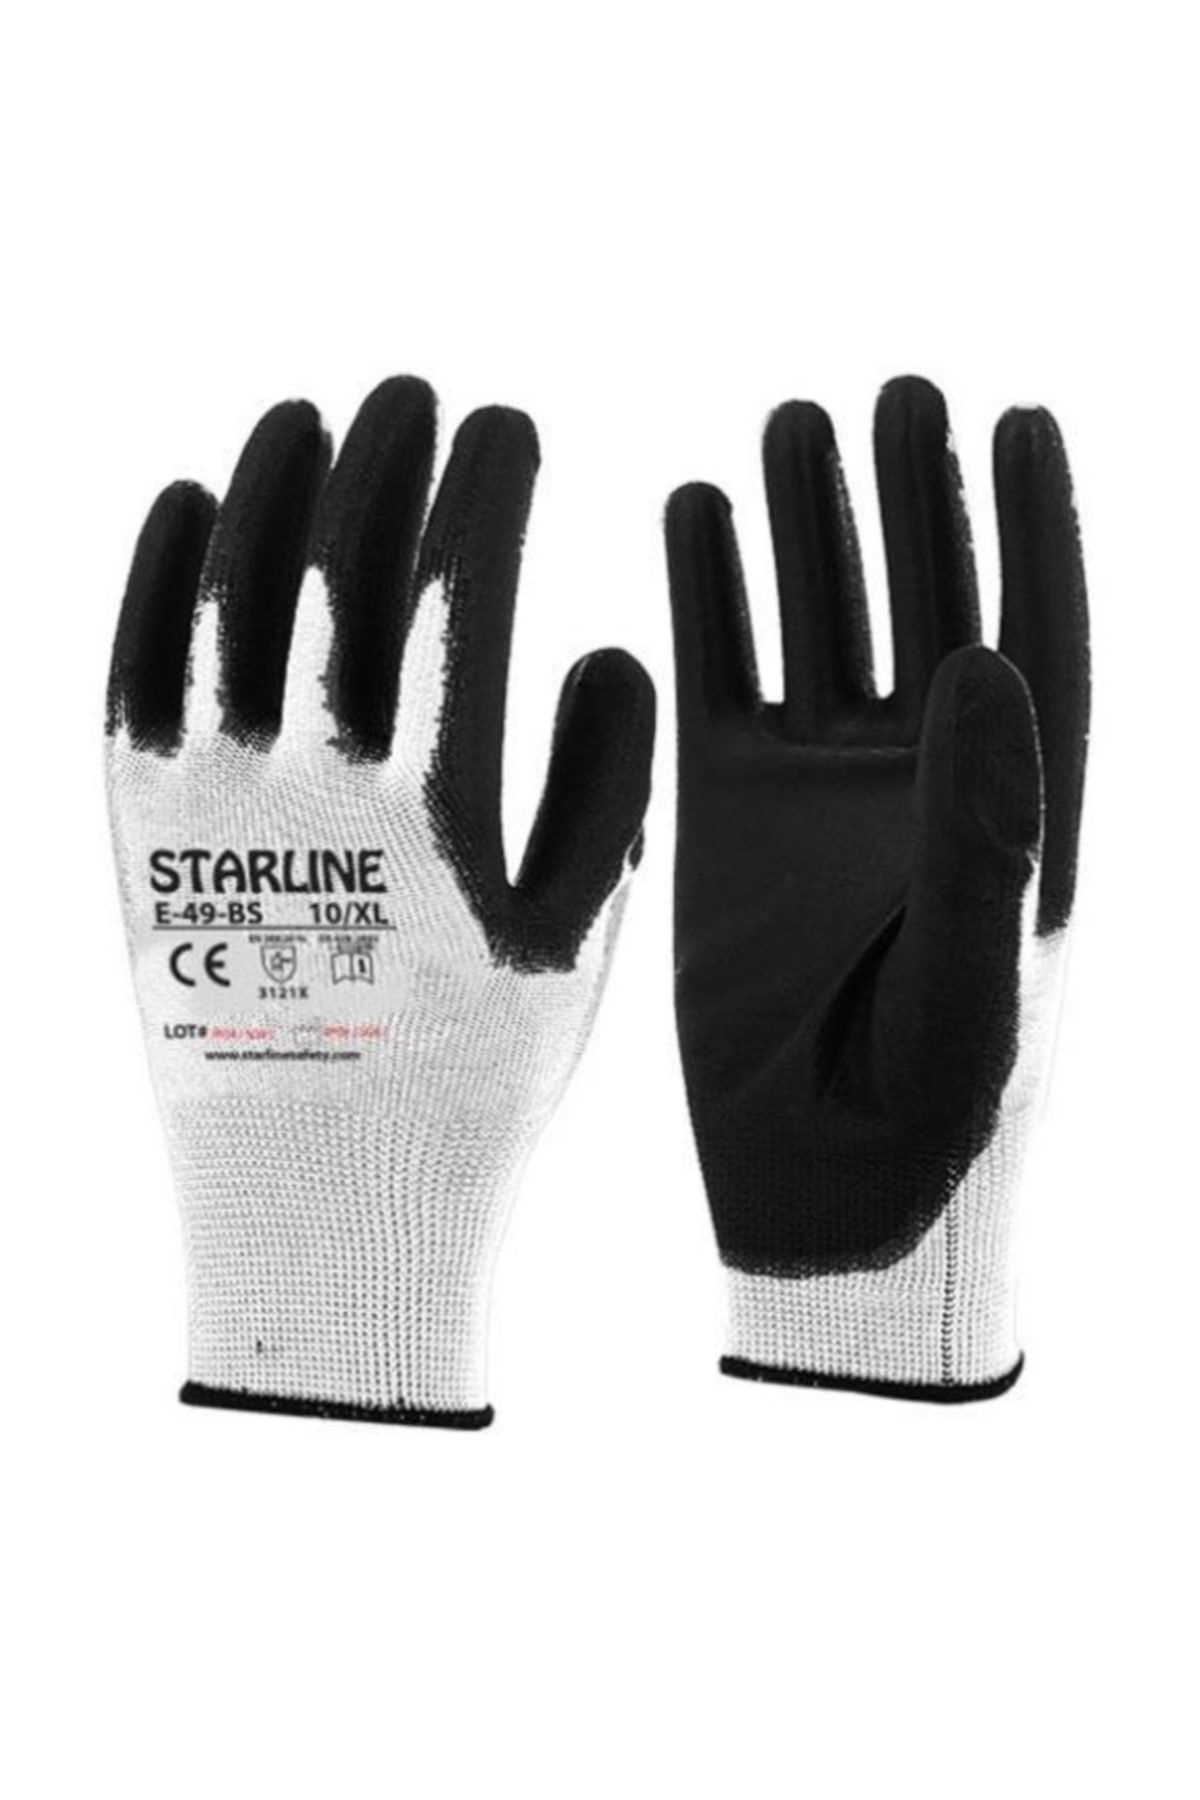 Starline E-49bs-10 Poliüretan Eldiven No:10/xl Beyaz-siyah